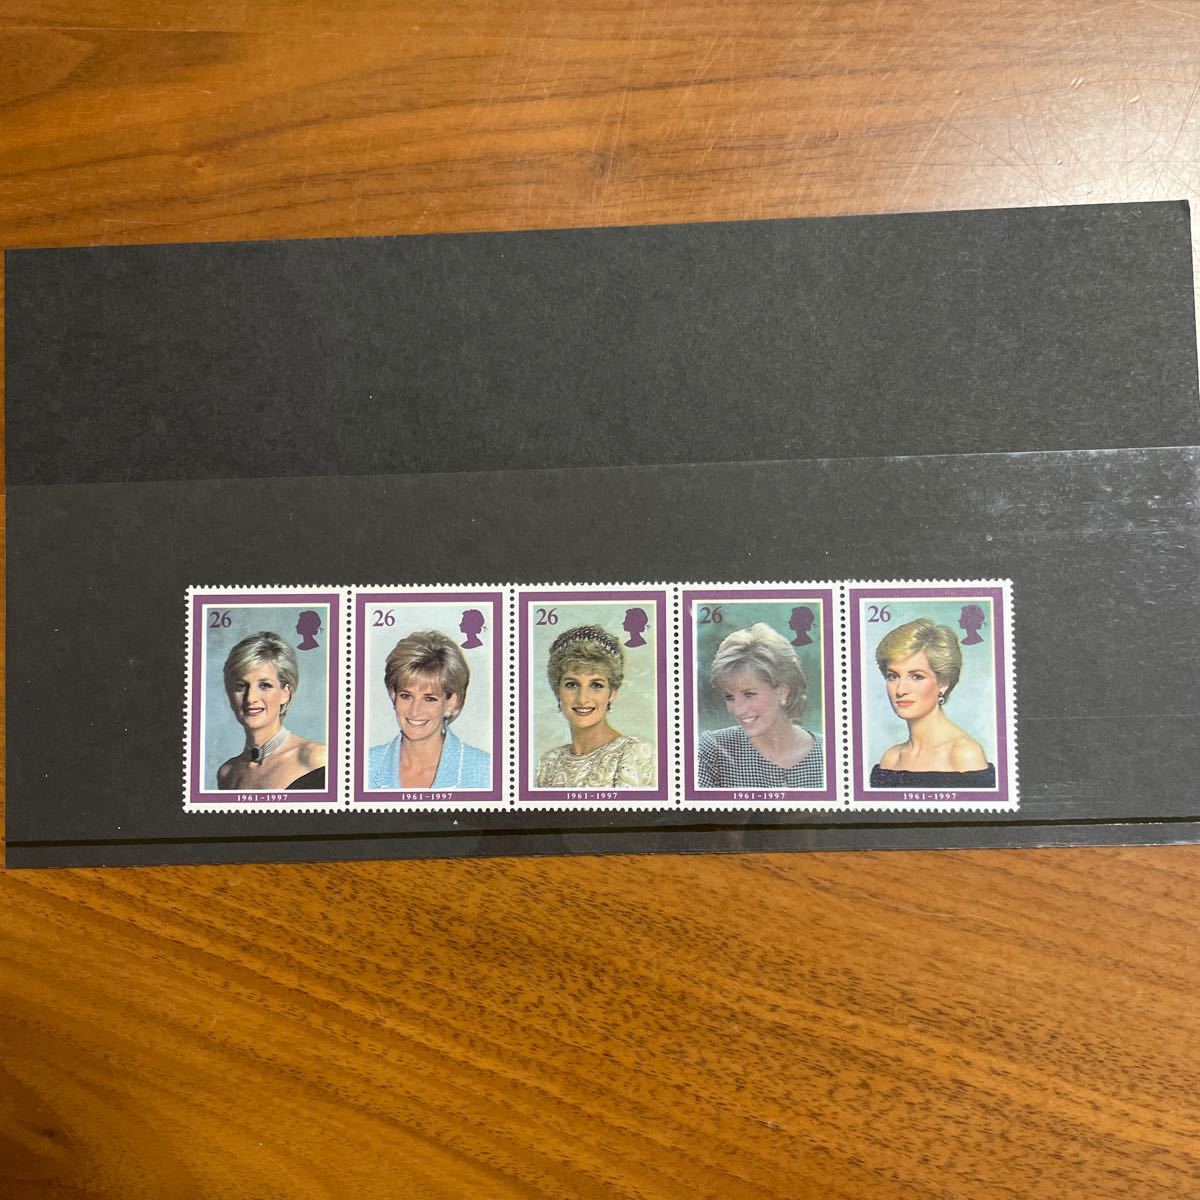 アンティーク 記念切手 ダイアナ妃 希少 レア物 DIANA PRINCESS OF WALES スタンプ 切手 イギリス 王室 ロンドンコレクションの画像3